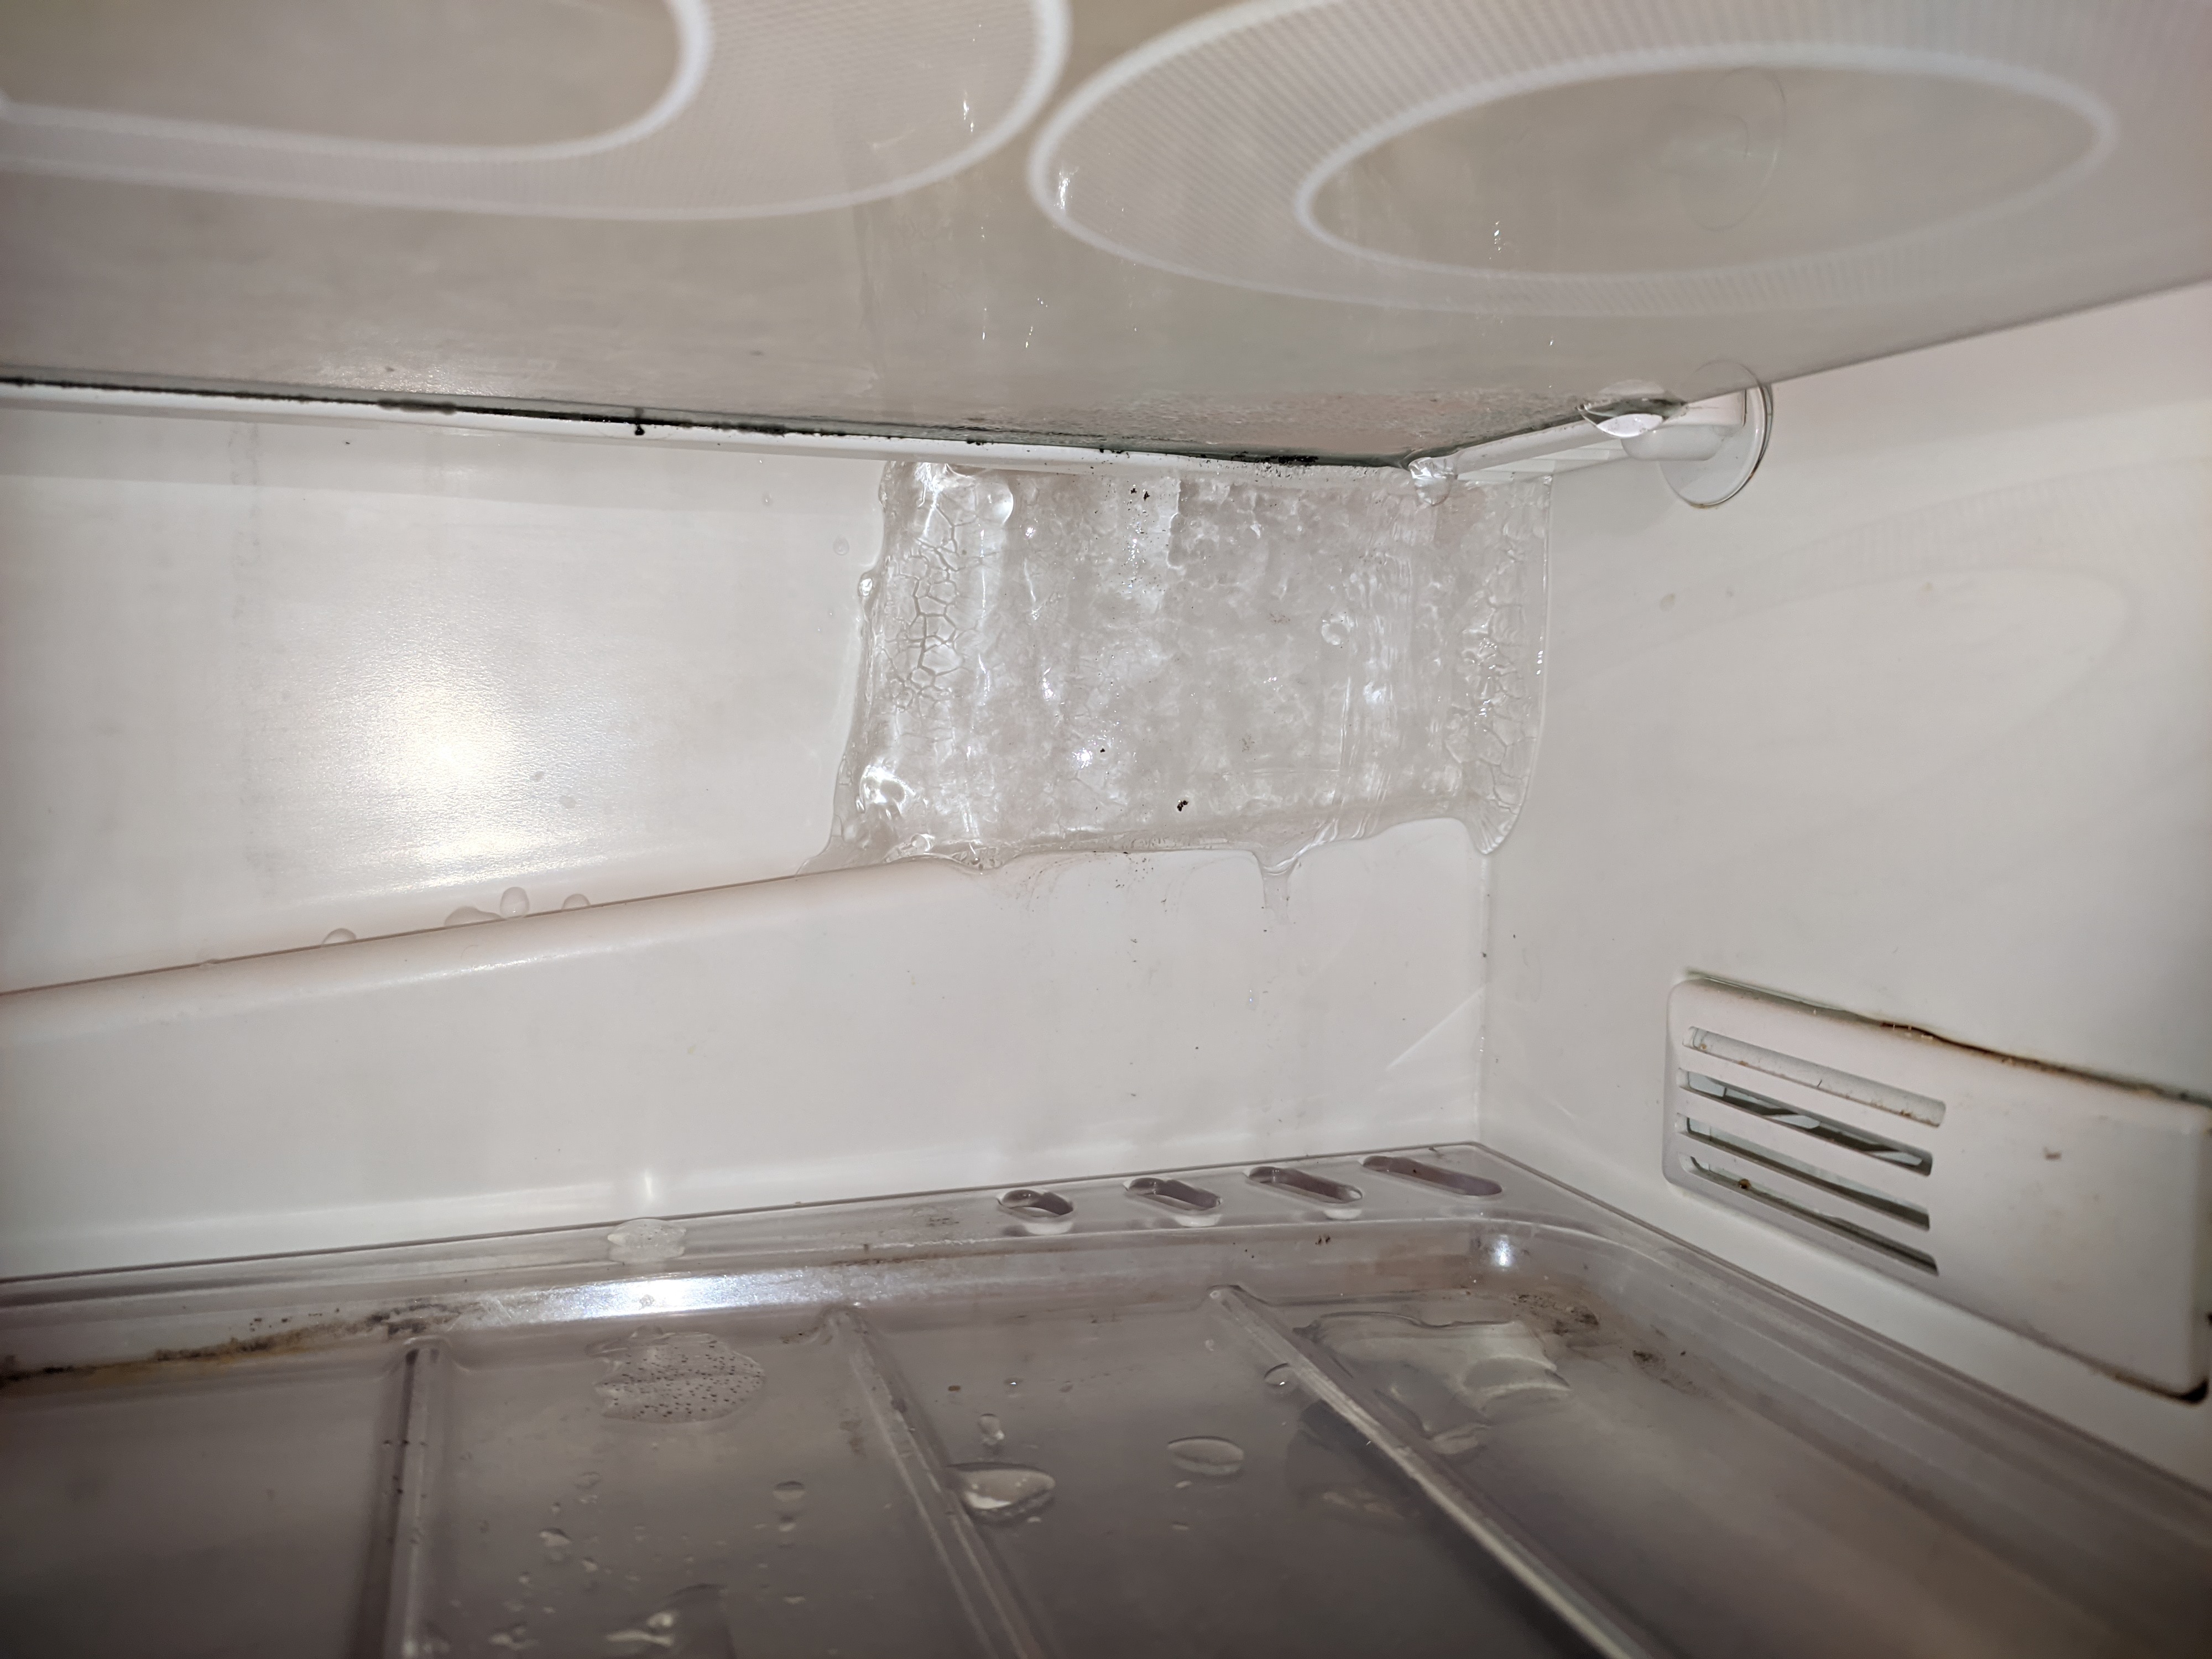 Почему в холодильнике намерзает снег. Холодильник Бирюса задняя стенка. Намерзает холодильник Индезит. Холодильник Индезит ноу Фрост намерзает лед. Эадняя стенка холод дьника Атланта.